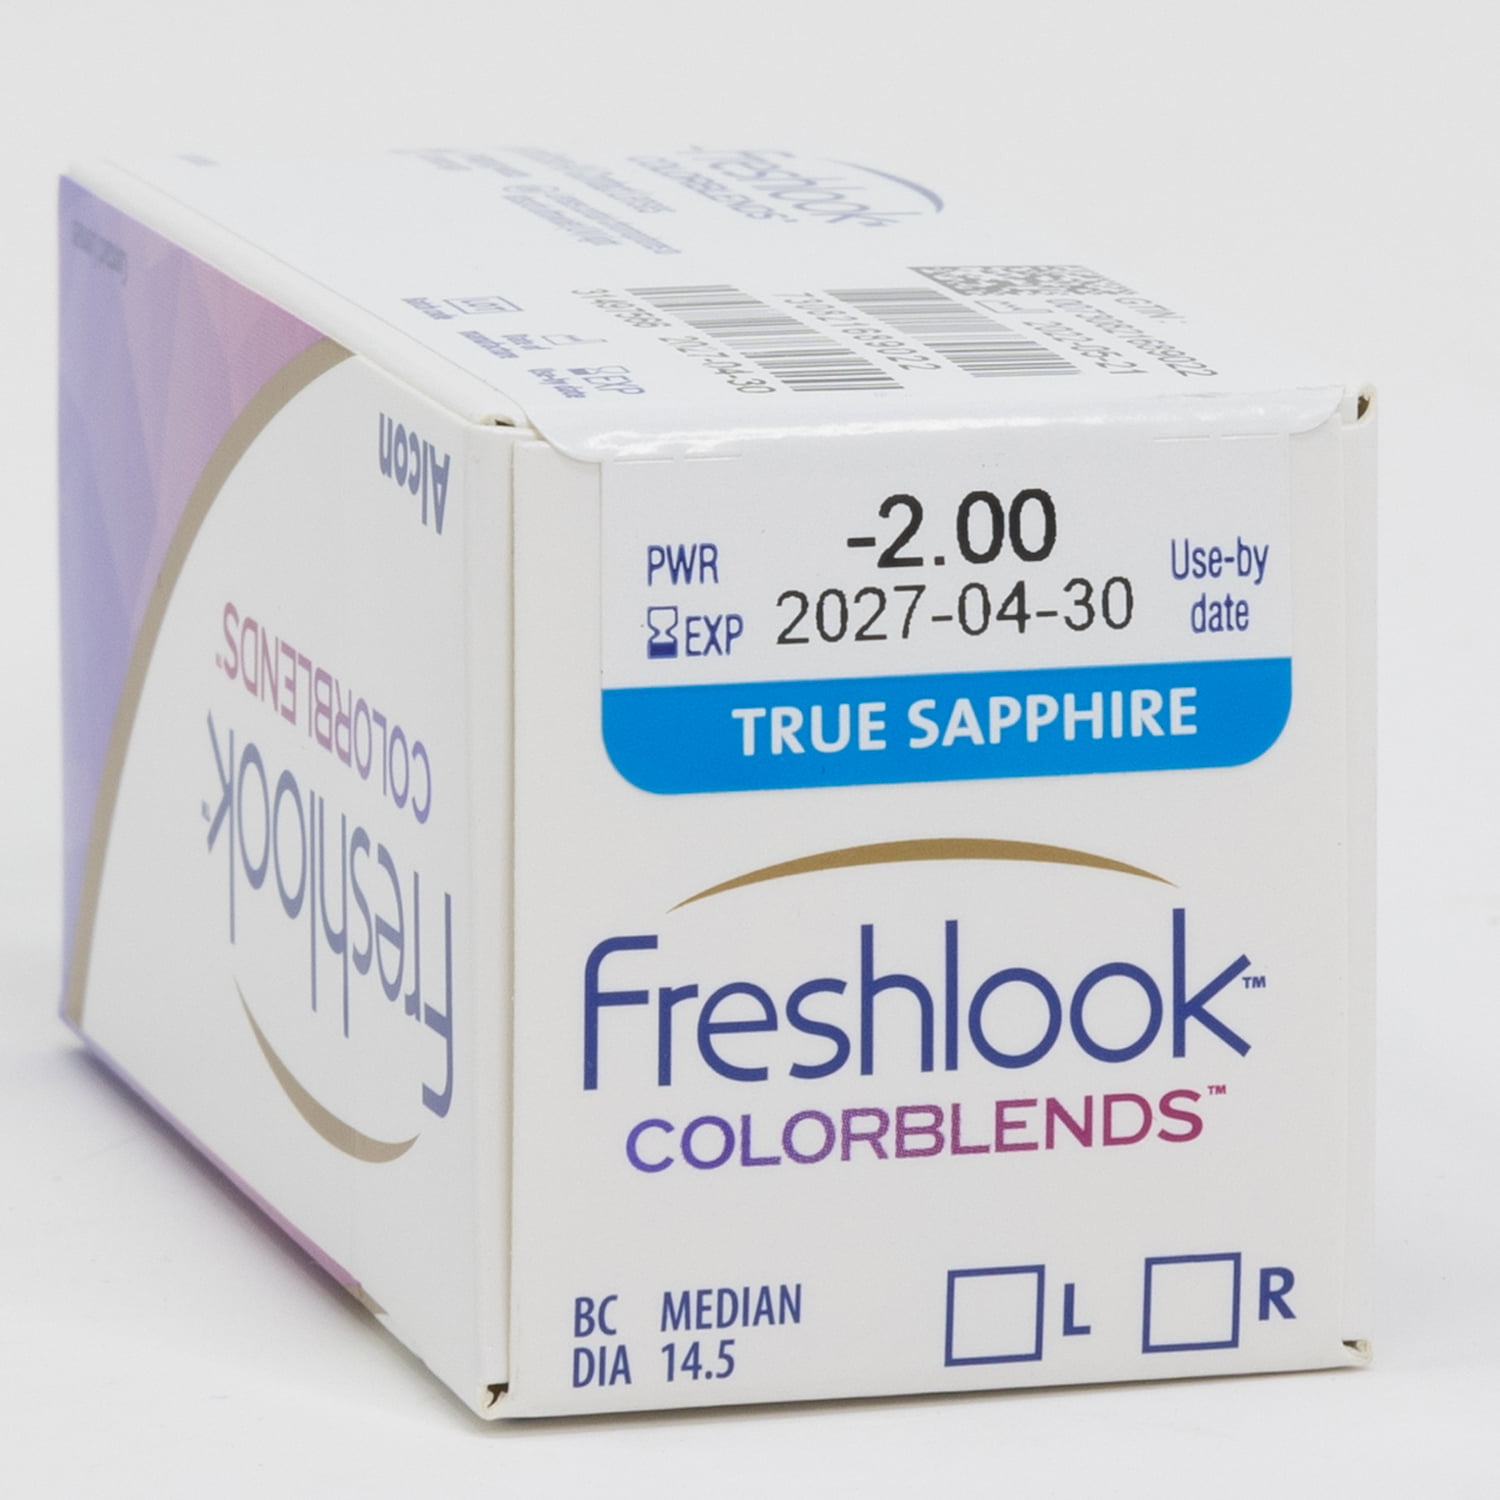 freshlook colorblends logo